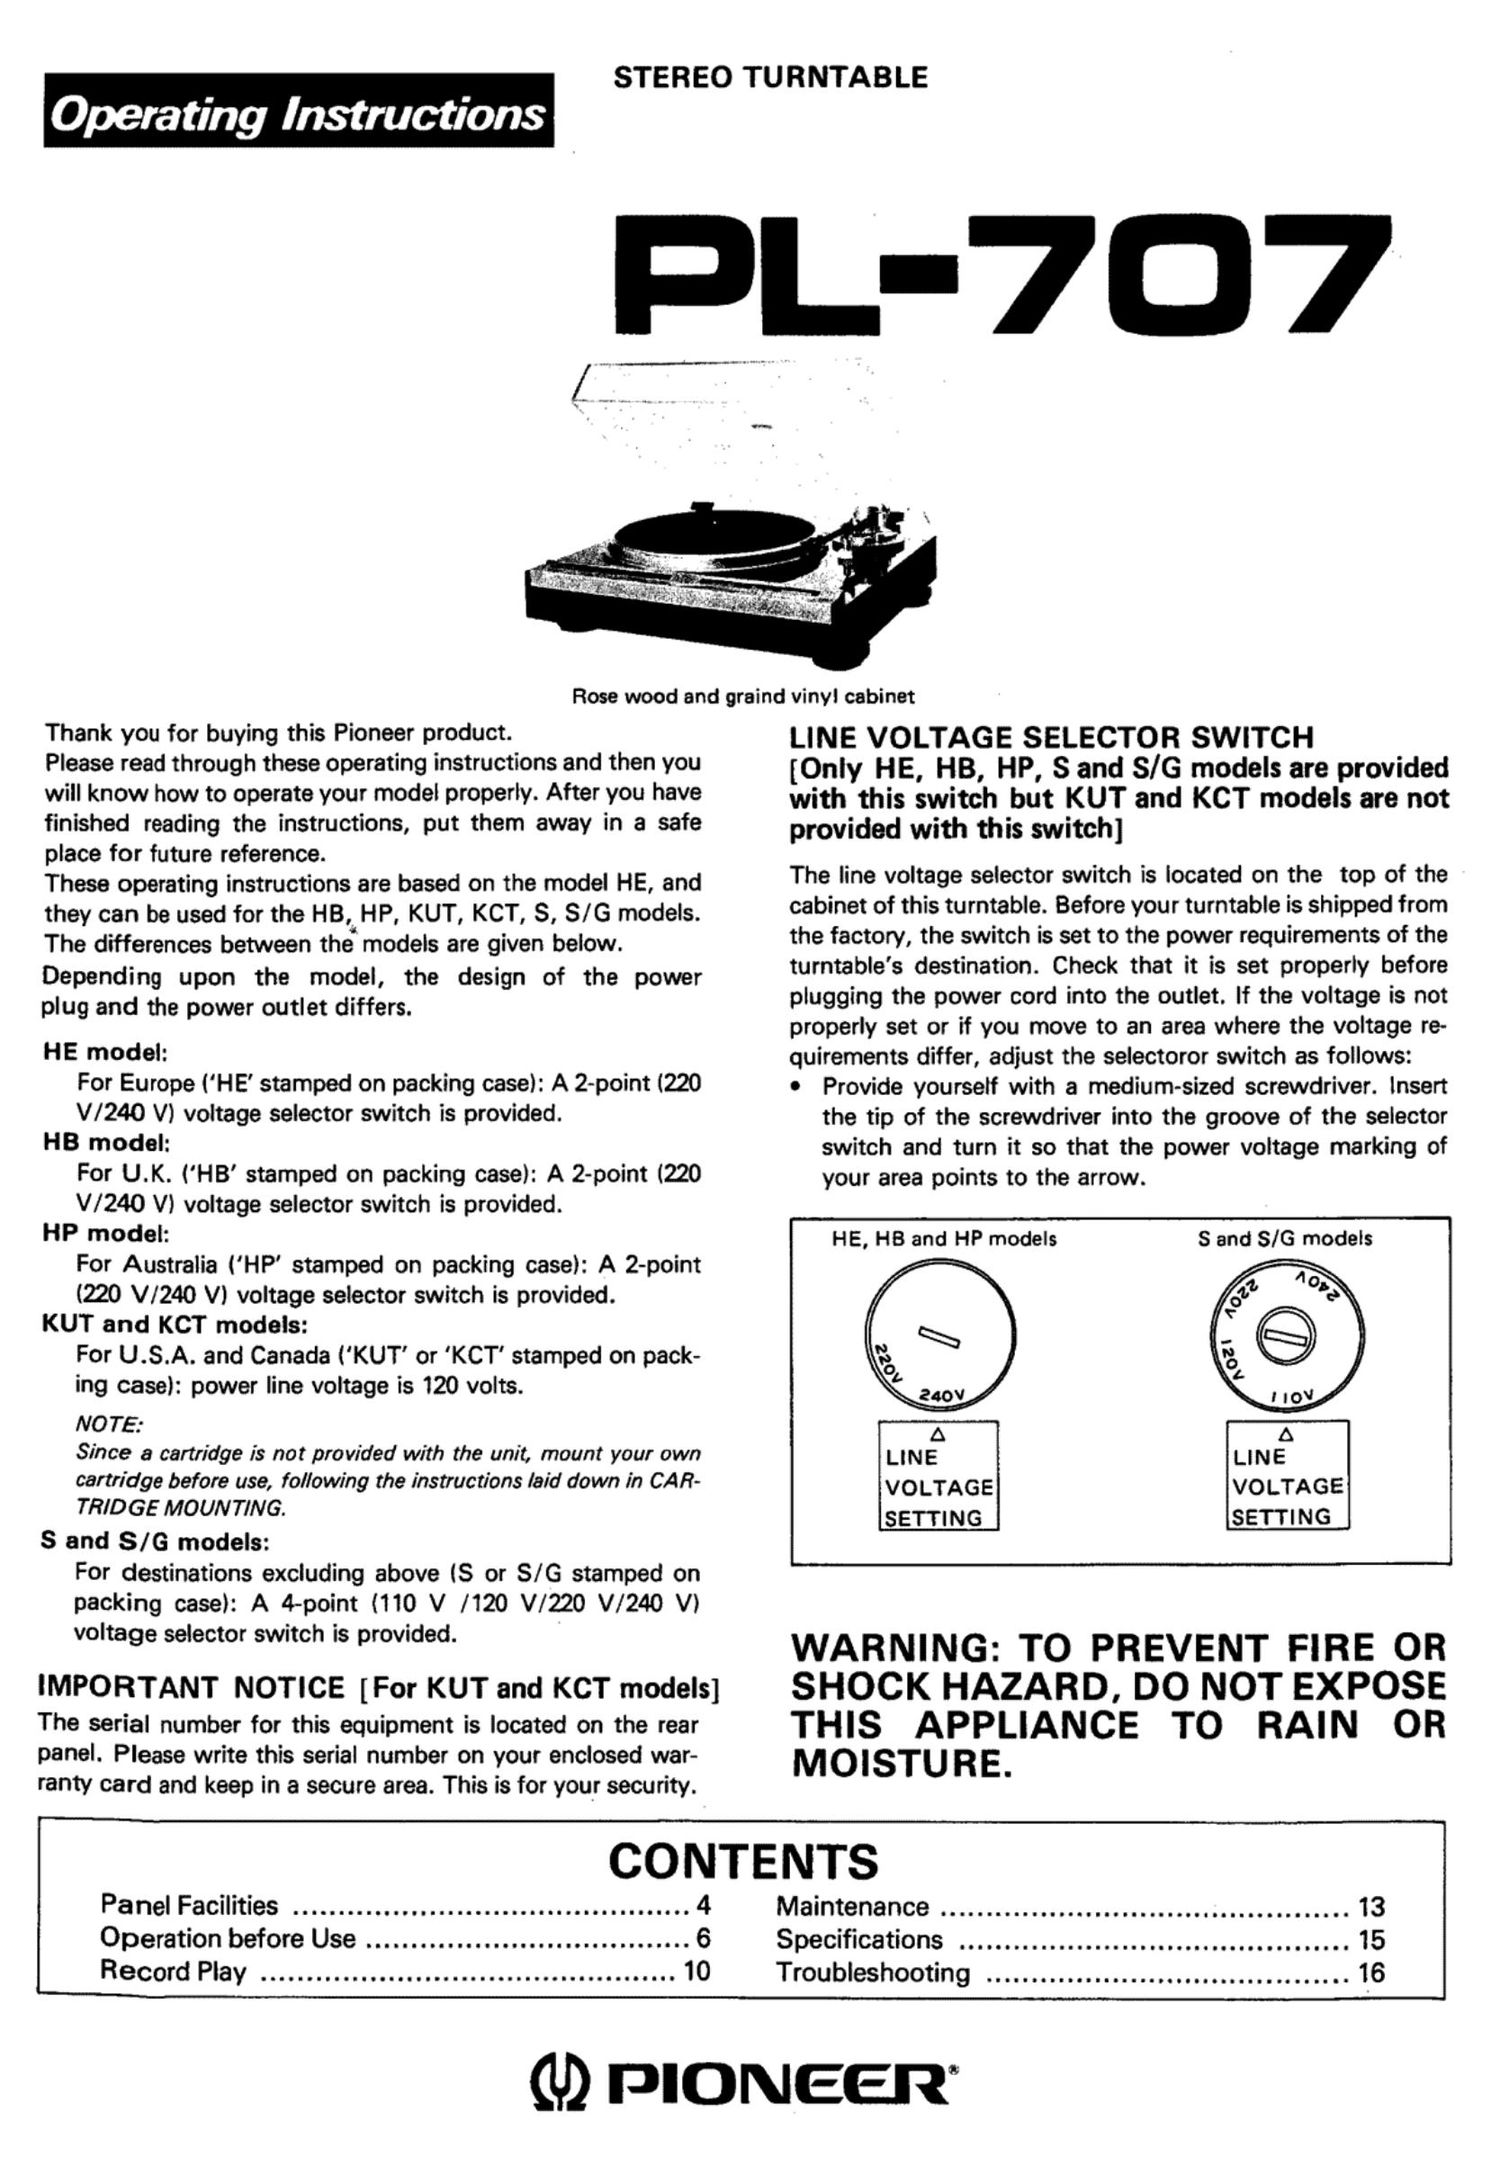 pioneer pl 707 owners manual